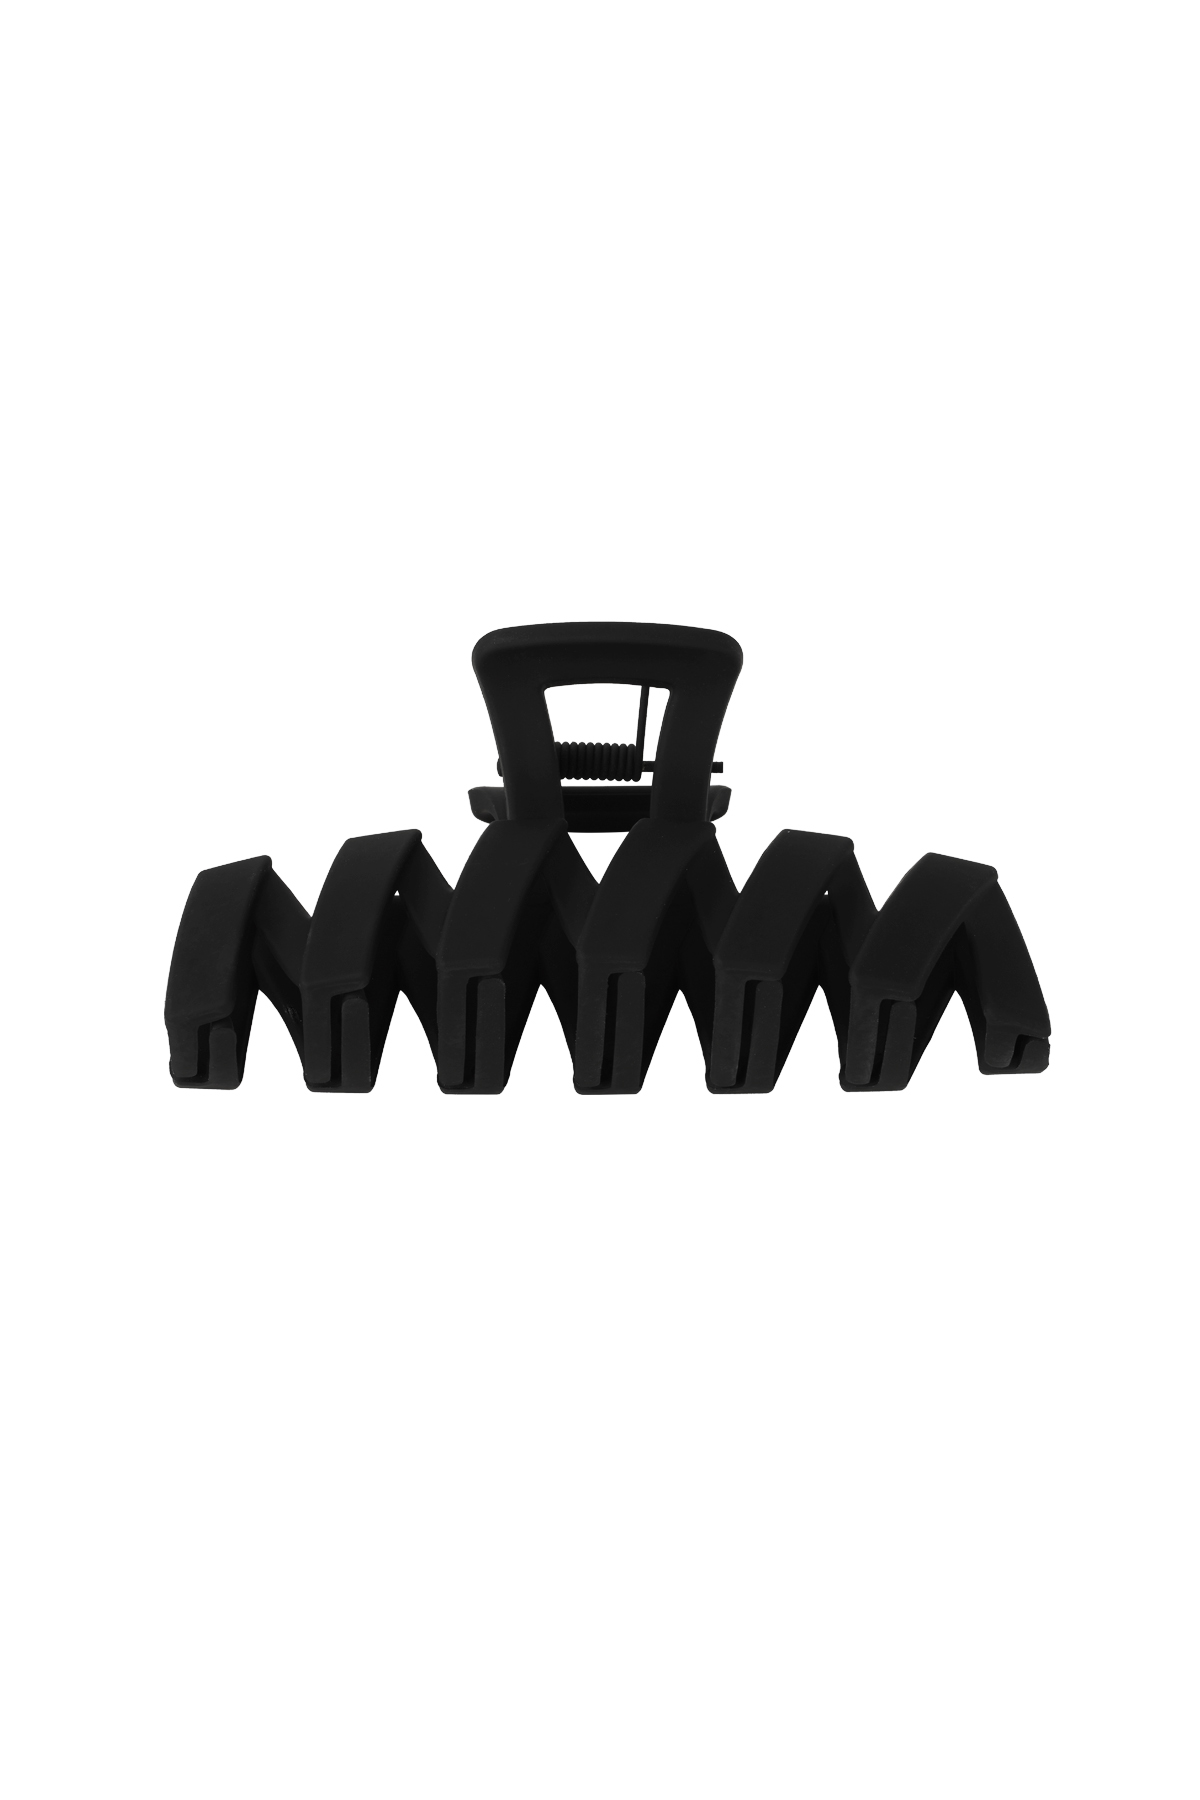 Hair clip zigzag - black Plastic 